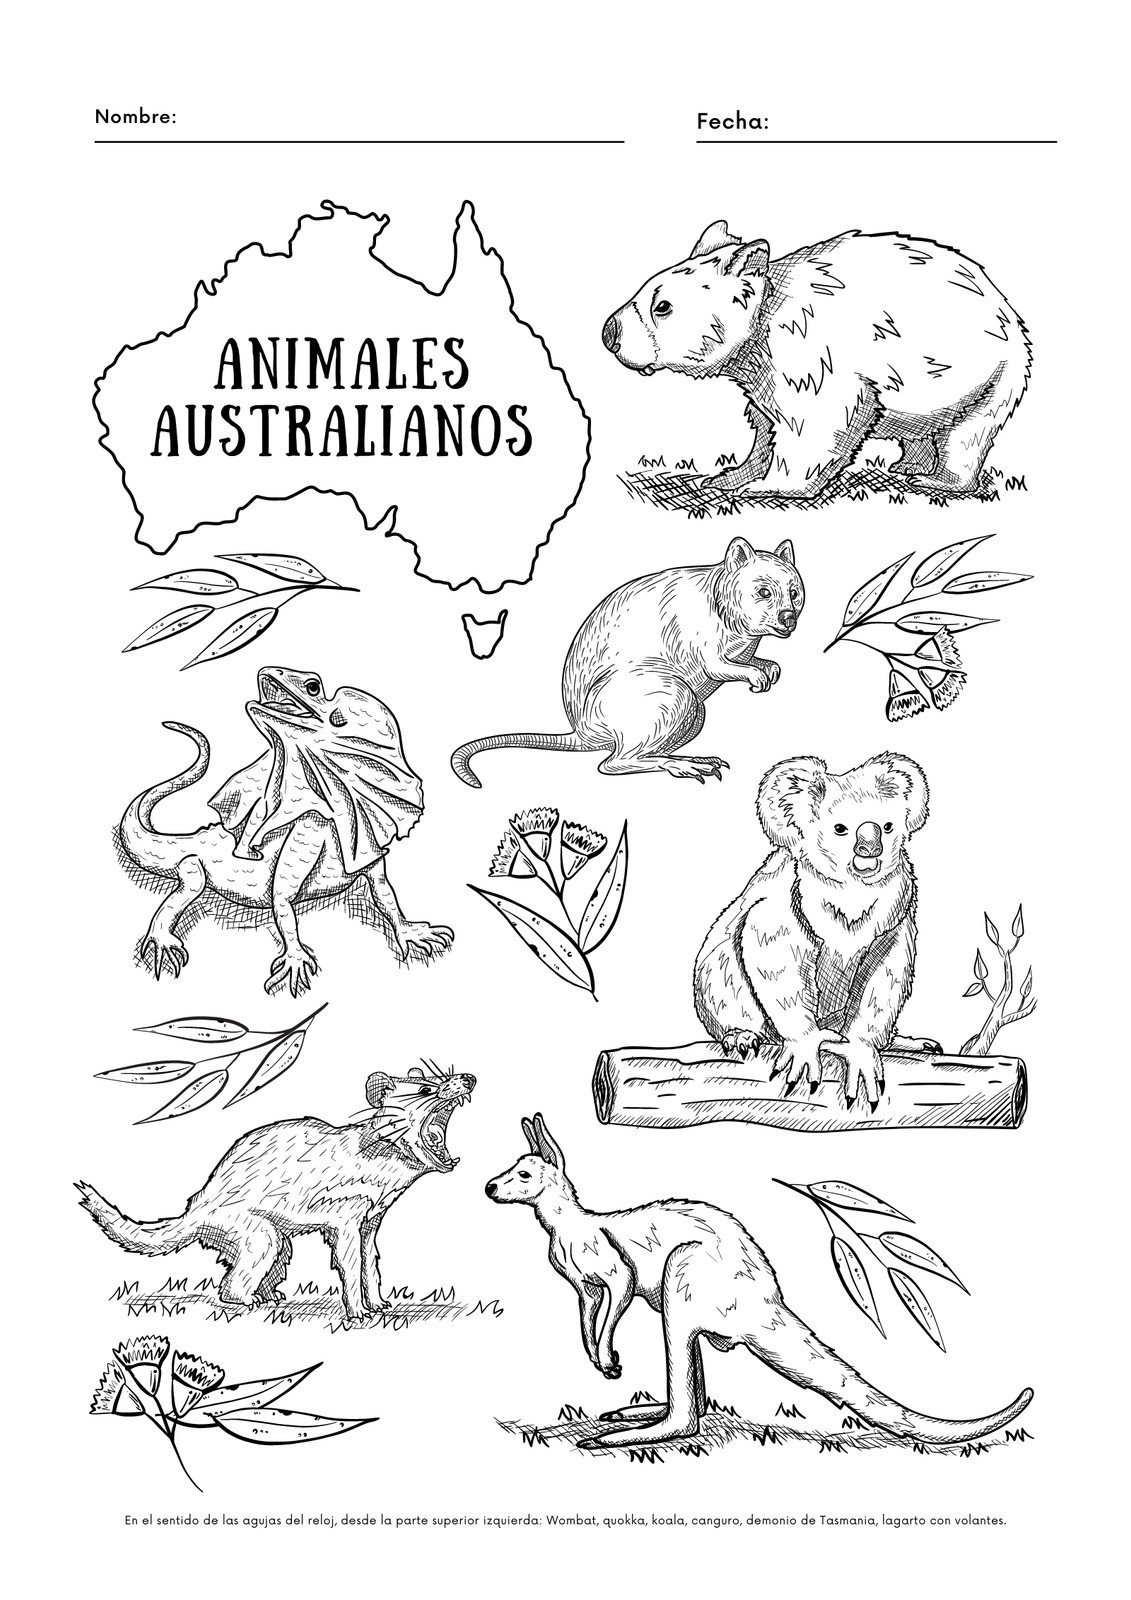 Hoja de trabajo con animales australianos en blanco y negro para colorear